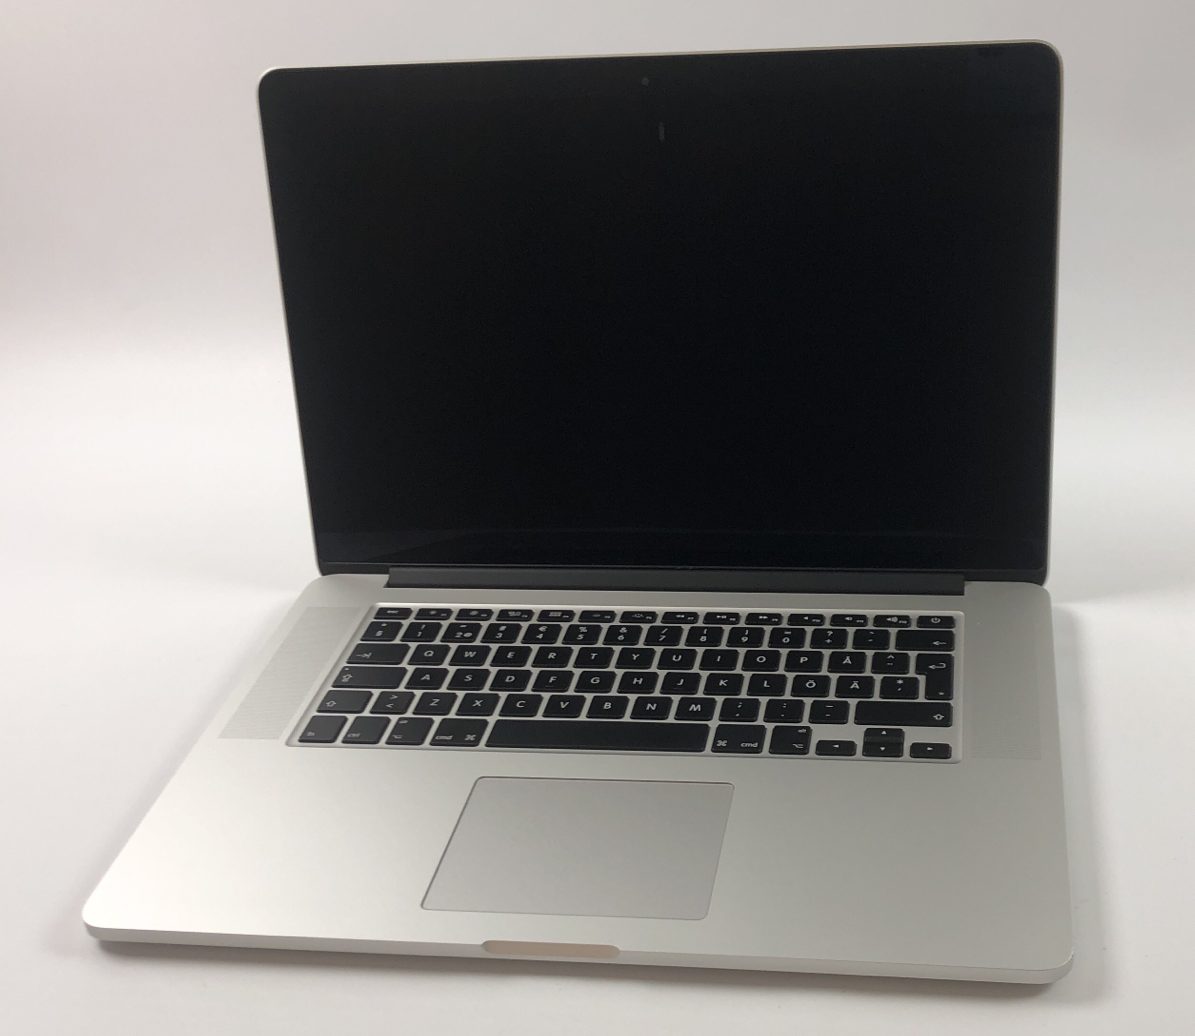 MacBook Pro Retina 15" Mid 2015 (Intel Quad-Core i7 2.2 GHz 16 GB RAM 256 GB SSD), Intel Quad-Core i7 2.2 GHz, 16 GB RAM, 256 GB SSD, Afbeelding 1